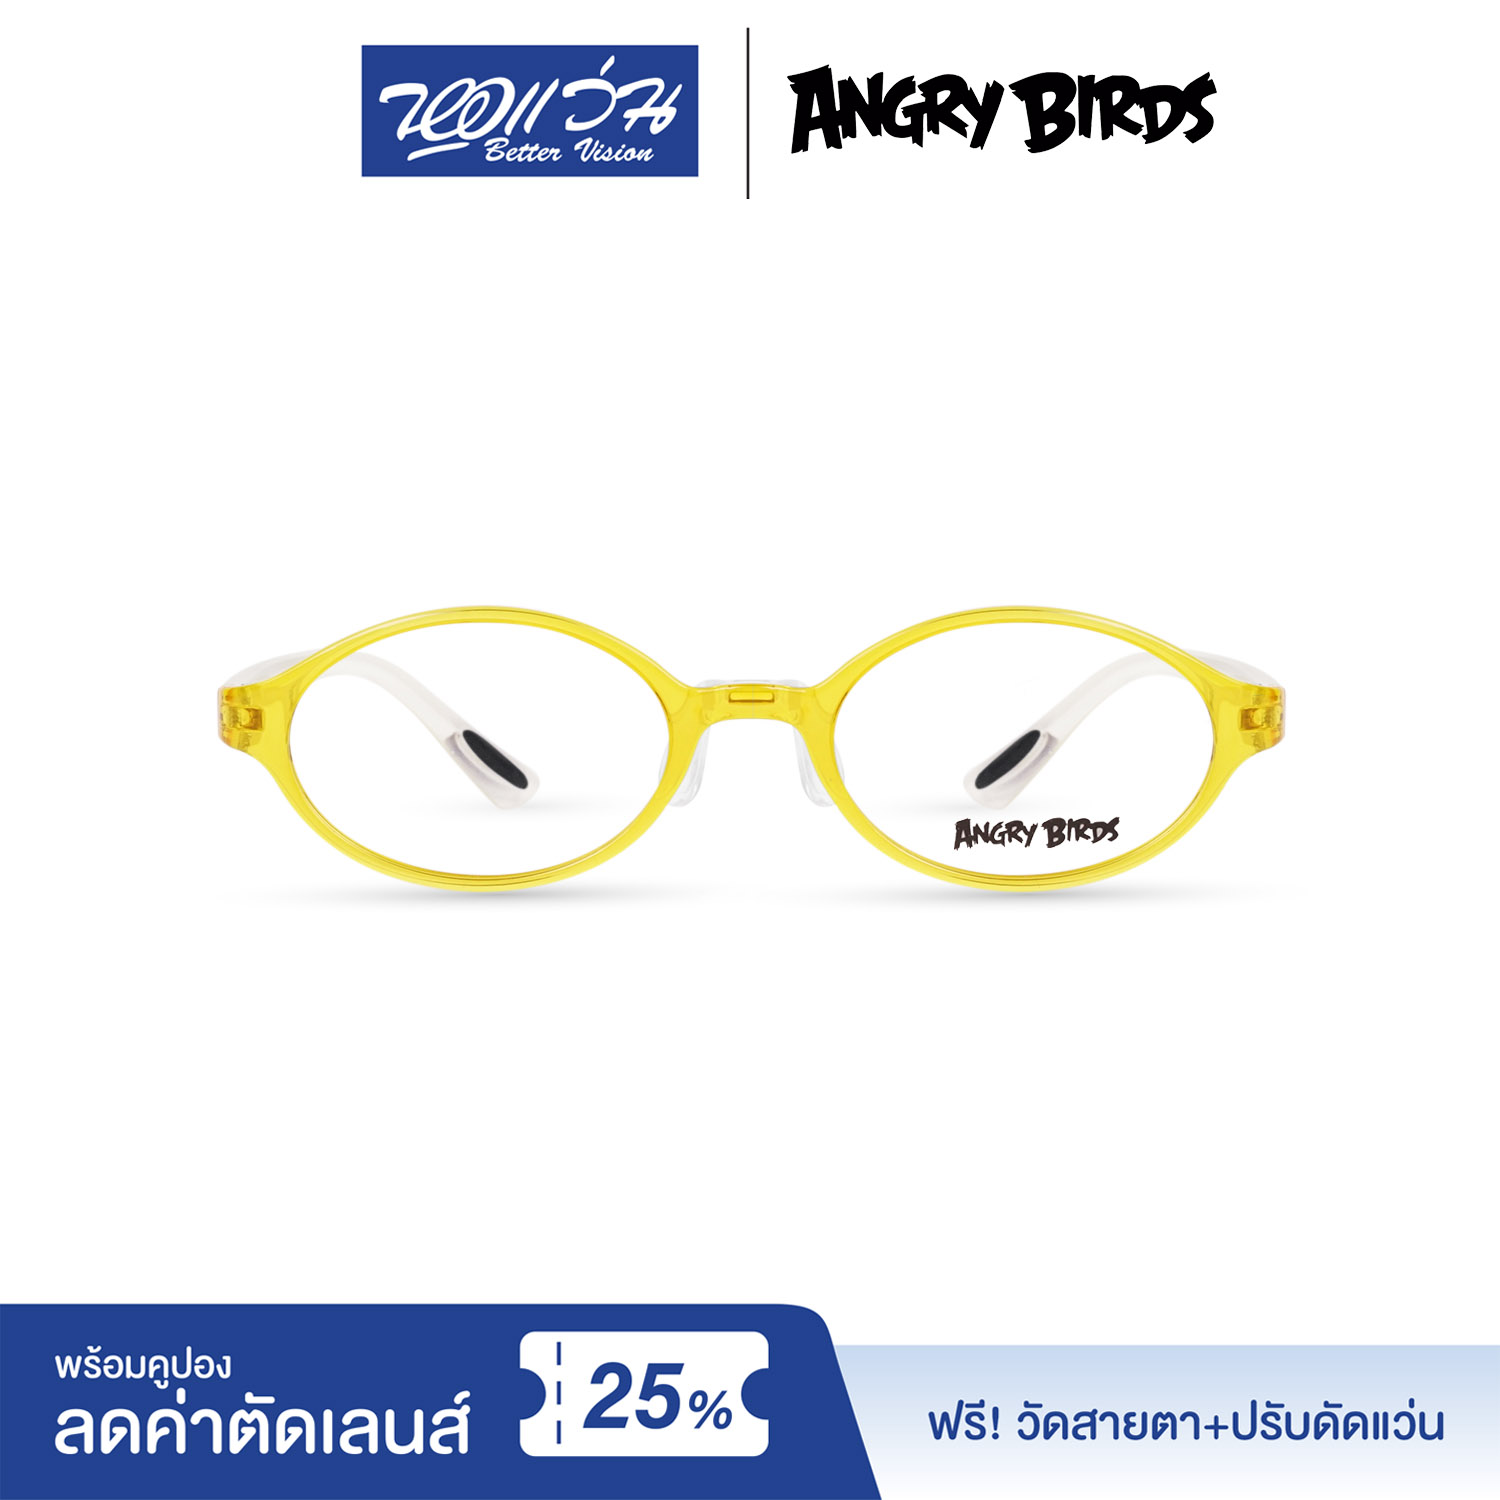 กรอบแว่นตาเด็ก แองกี้ เบิร์ด ANGRY BIRDS Child glasses แถมฟรีส่วนลดค่าตัดเลนส์ 25%  free 25% lens discount รุ่น FAG33111